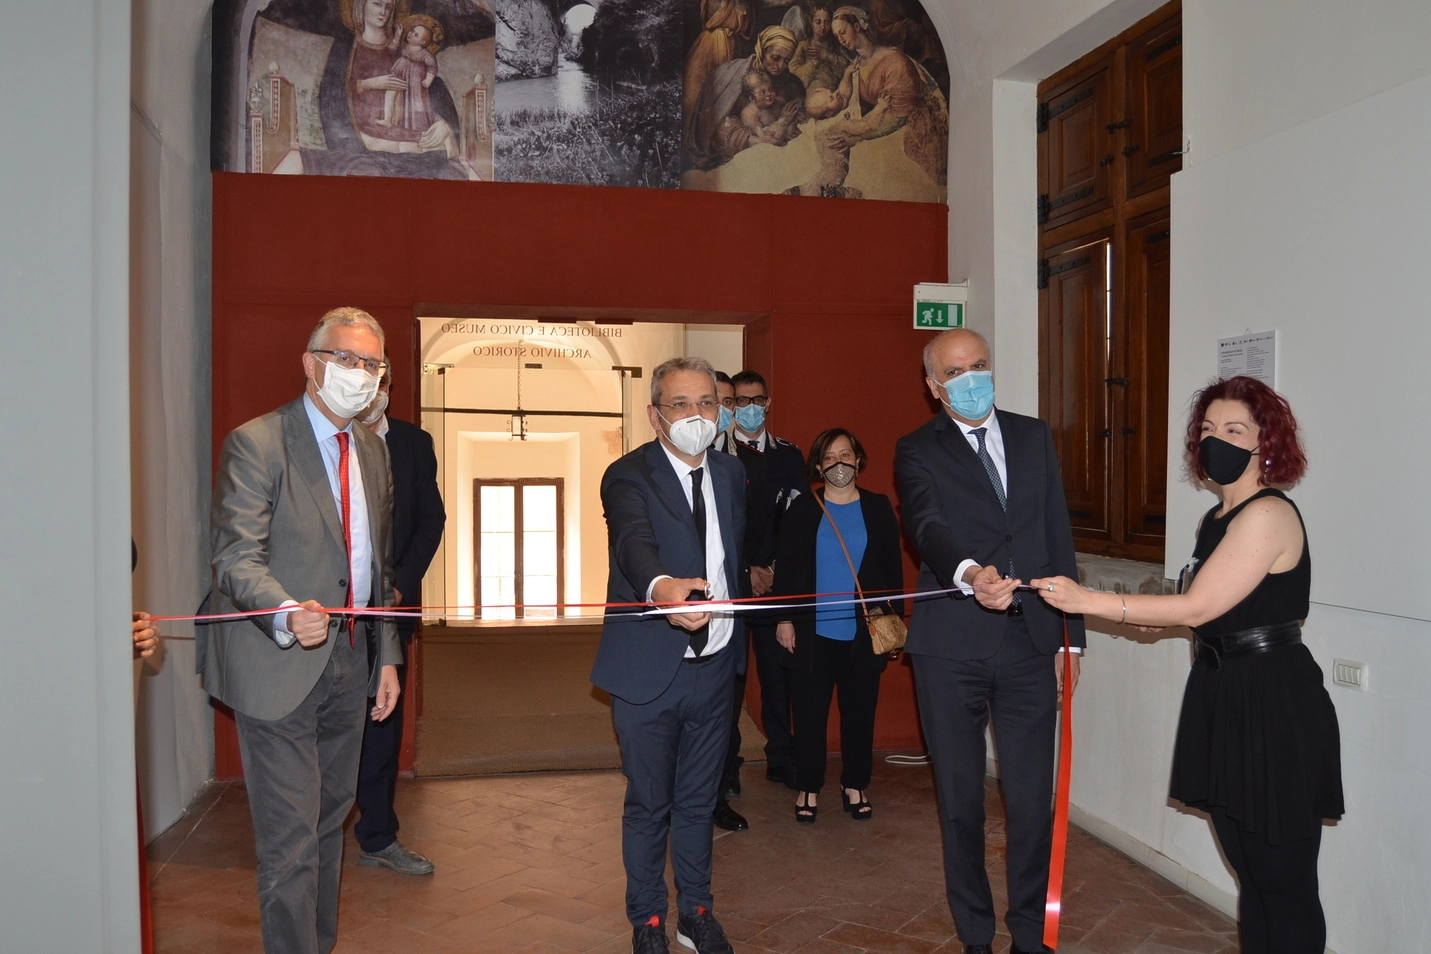 Urbania, inaugurazione della mostra a Palazzo Ducale sulla chiesa di santa Chiara